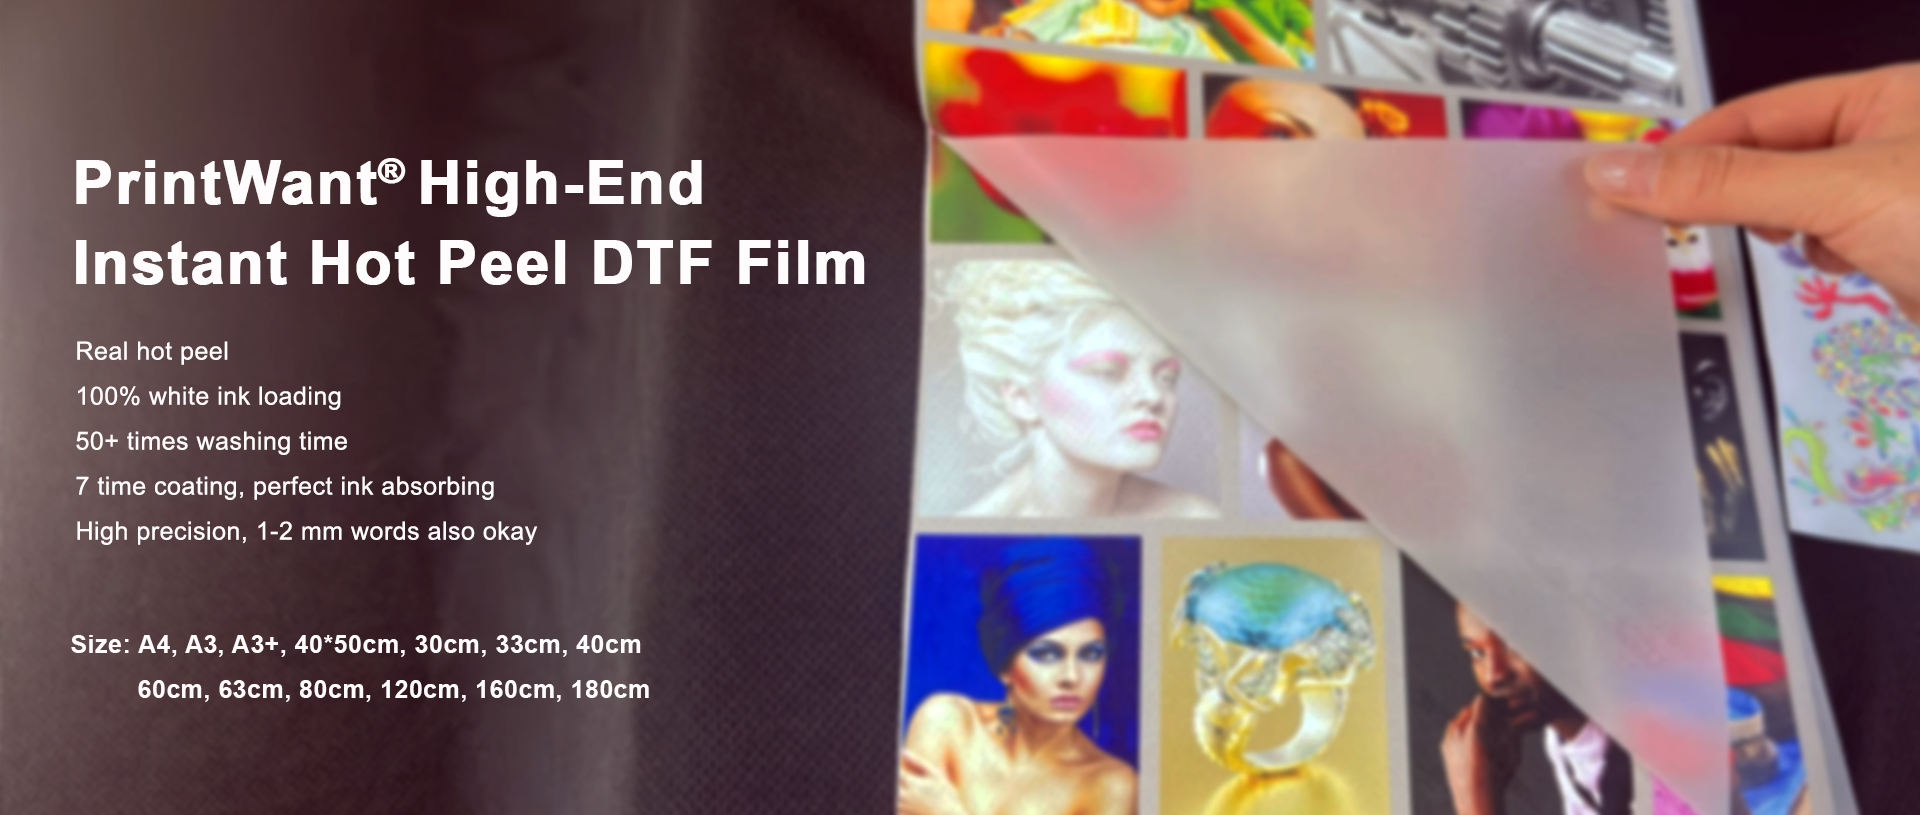 DTF Pet Film de PrintWant: el modelo industrial para efectos perfectos de Instant Hot Peel